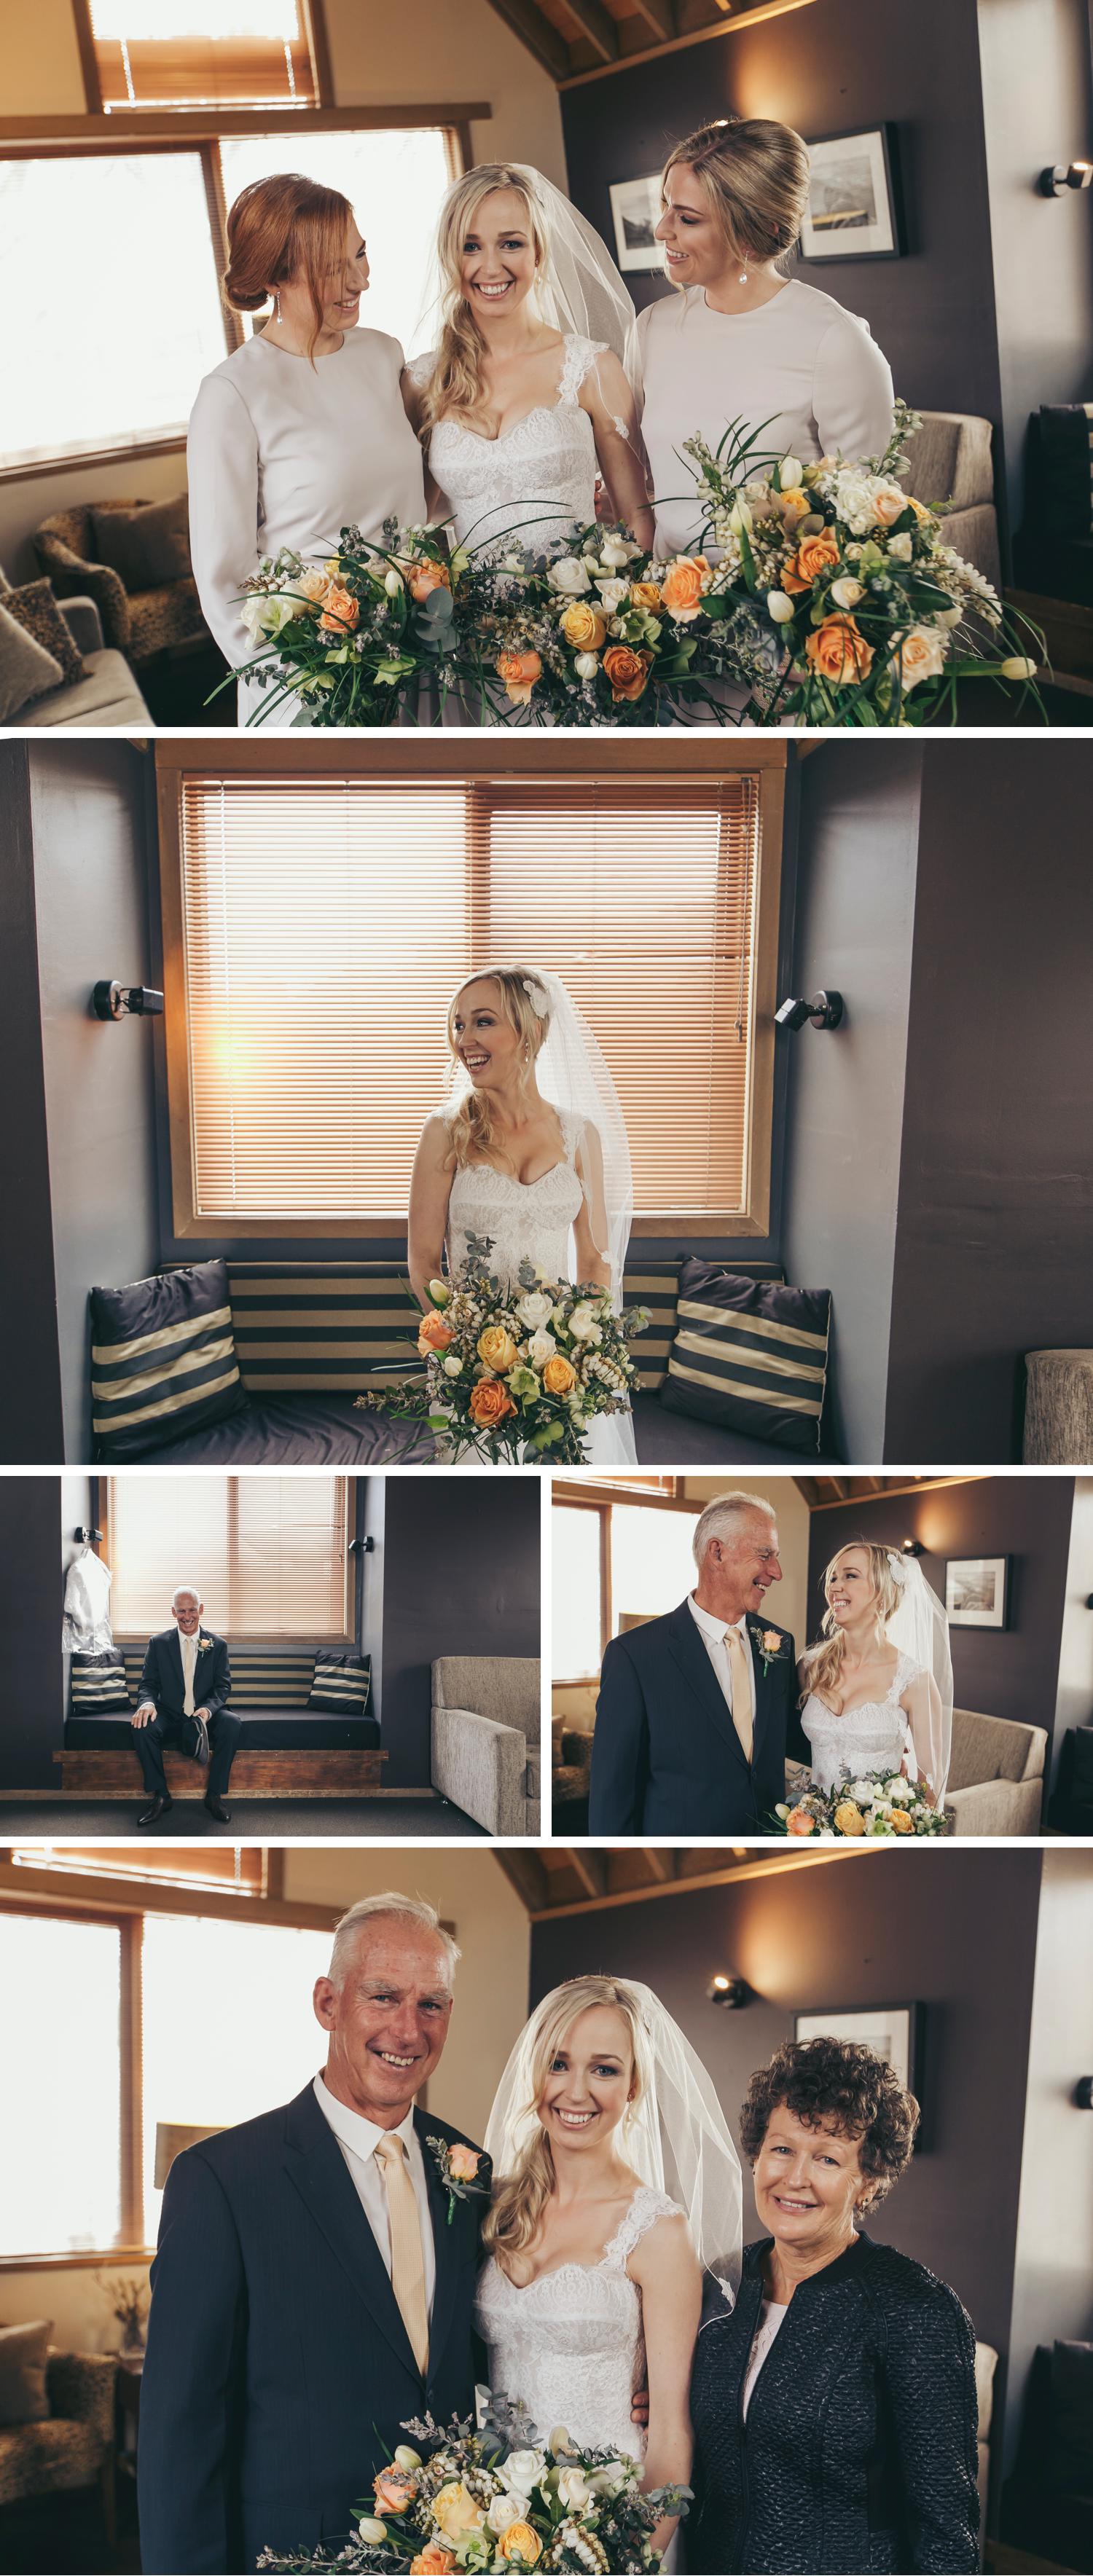 Rundells Alpine Lodge Wedding, Snow Wedding Photos, Beautiful Wedding Photos by Danae Studios, Bride Getting Ready